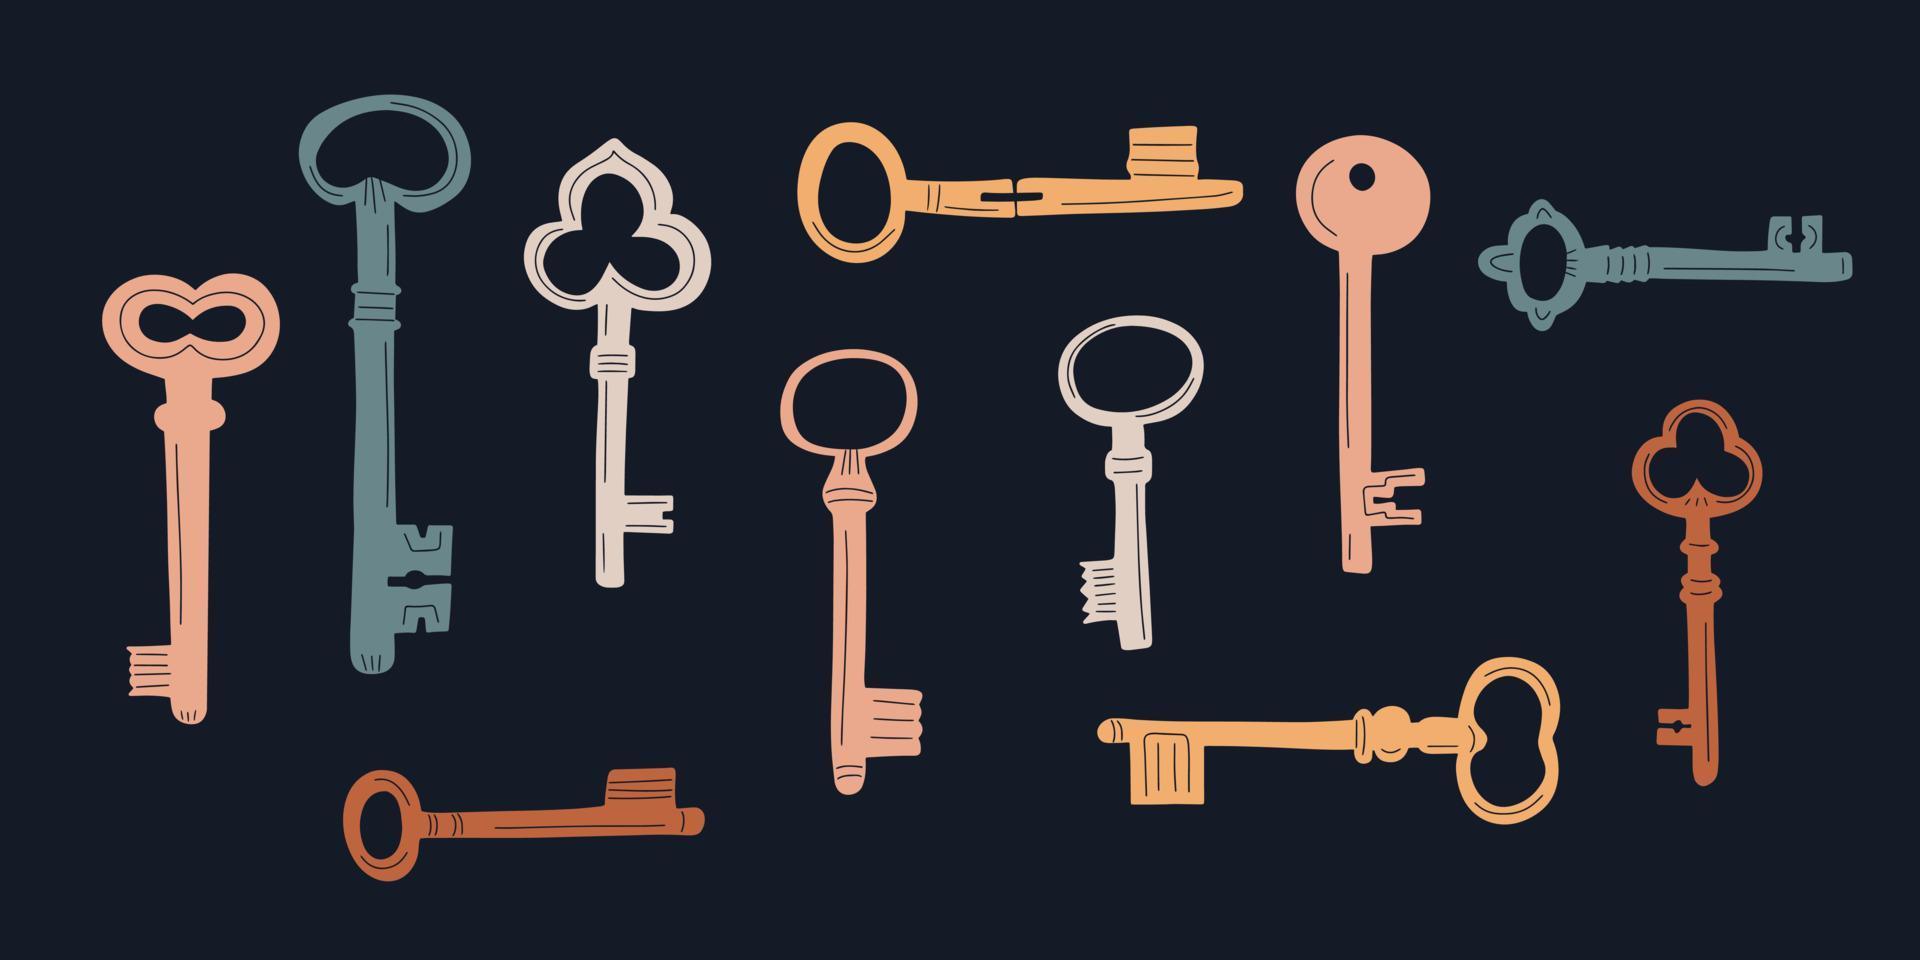 conjunto de iconos de garabatos de llave antigua dibujados a mano. ilustración vectorial en estilo de dibujos animados sobre fondo oscuro vector